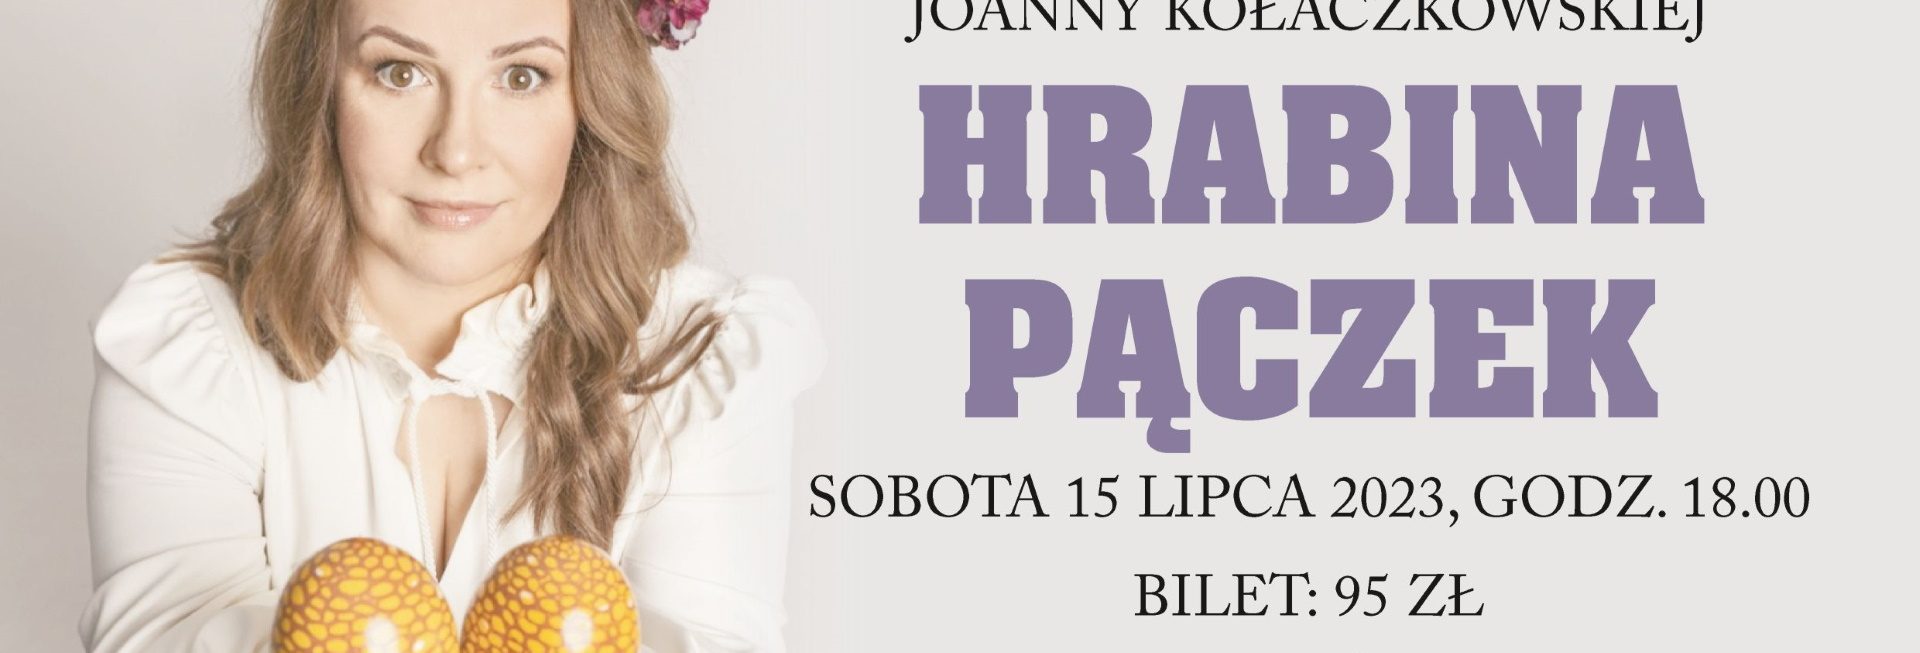 Plakat zapraszający do Centrum Kulturalno-Bibliotecznego w Gietrzwałdzie w sobotę 15 lipca 2023 r. na Recital Joanny Kołaczkowskiej "HRABINA PĄCZEK" Gietrzwałd 2023.